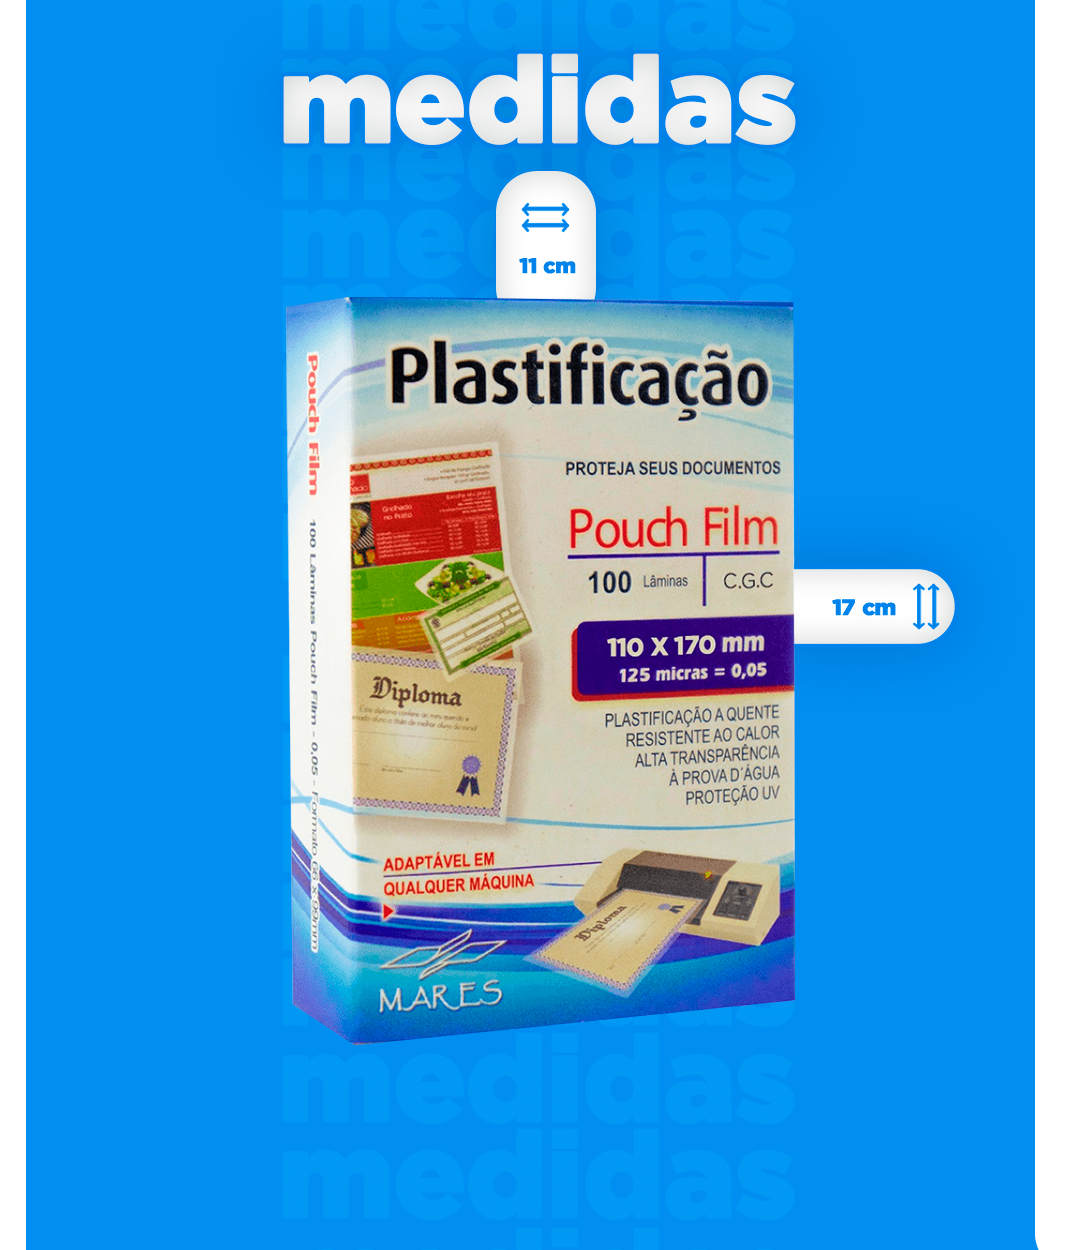 100 Plásticos Para Plástificação - ChTech - Plástico para Plastificação -  Magazine Luiza